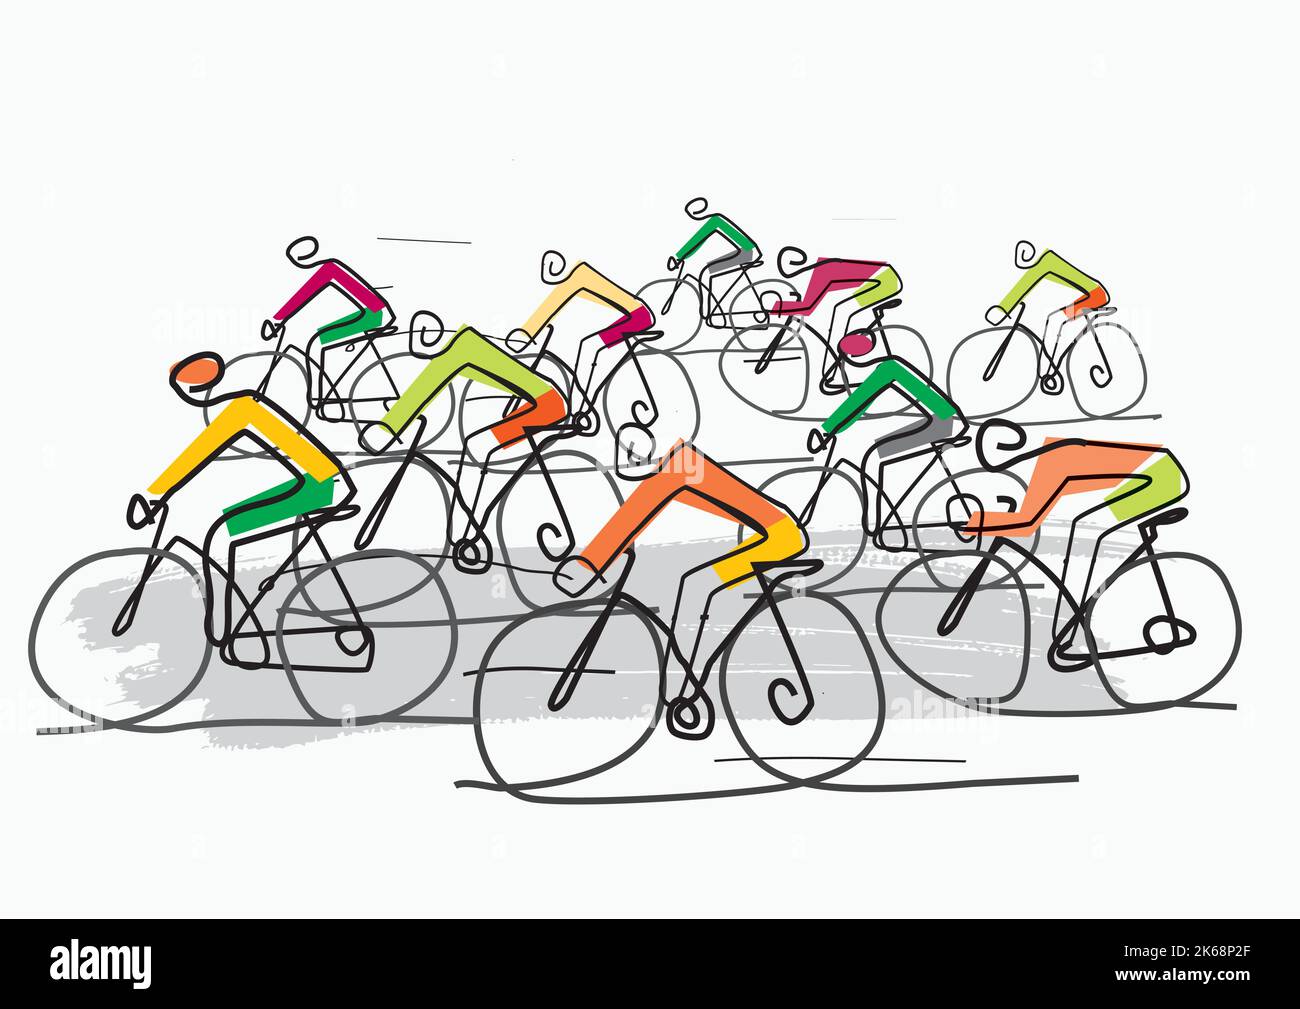 Course cycliste, dessin animé stylisé. Illustration d'un groupe de cyclistes sur une route. Mise en plan de ligne continue. Vecteur disponible. Illustration de Vecteur